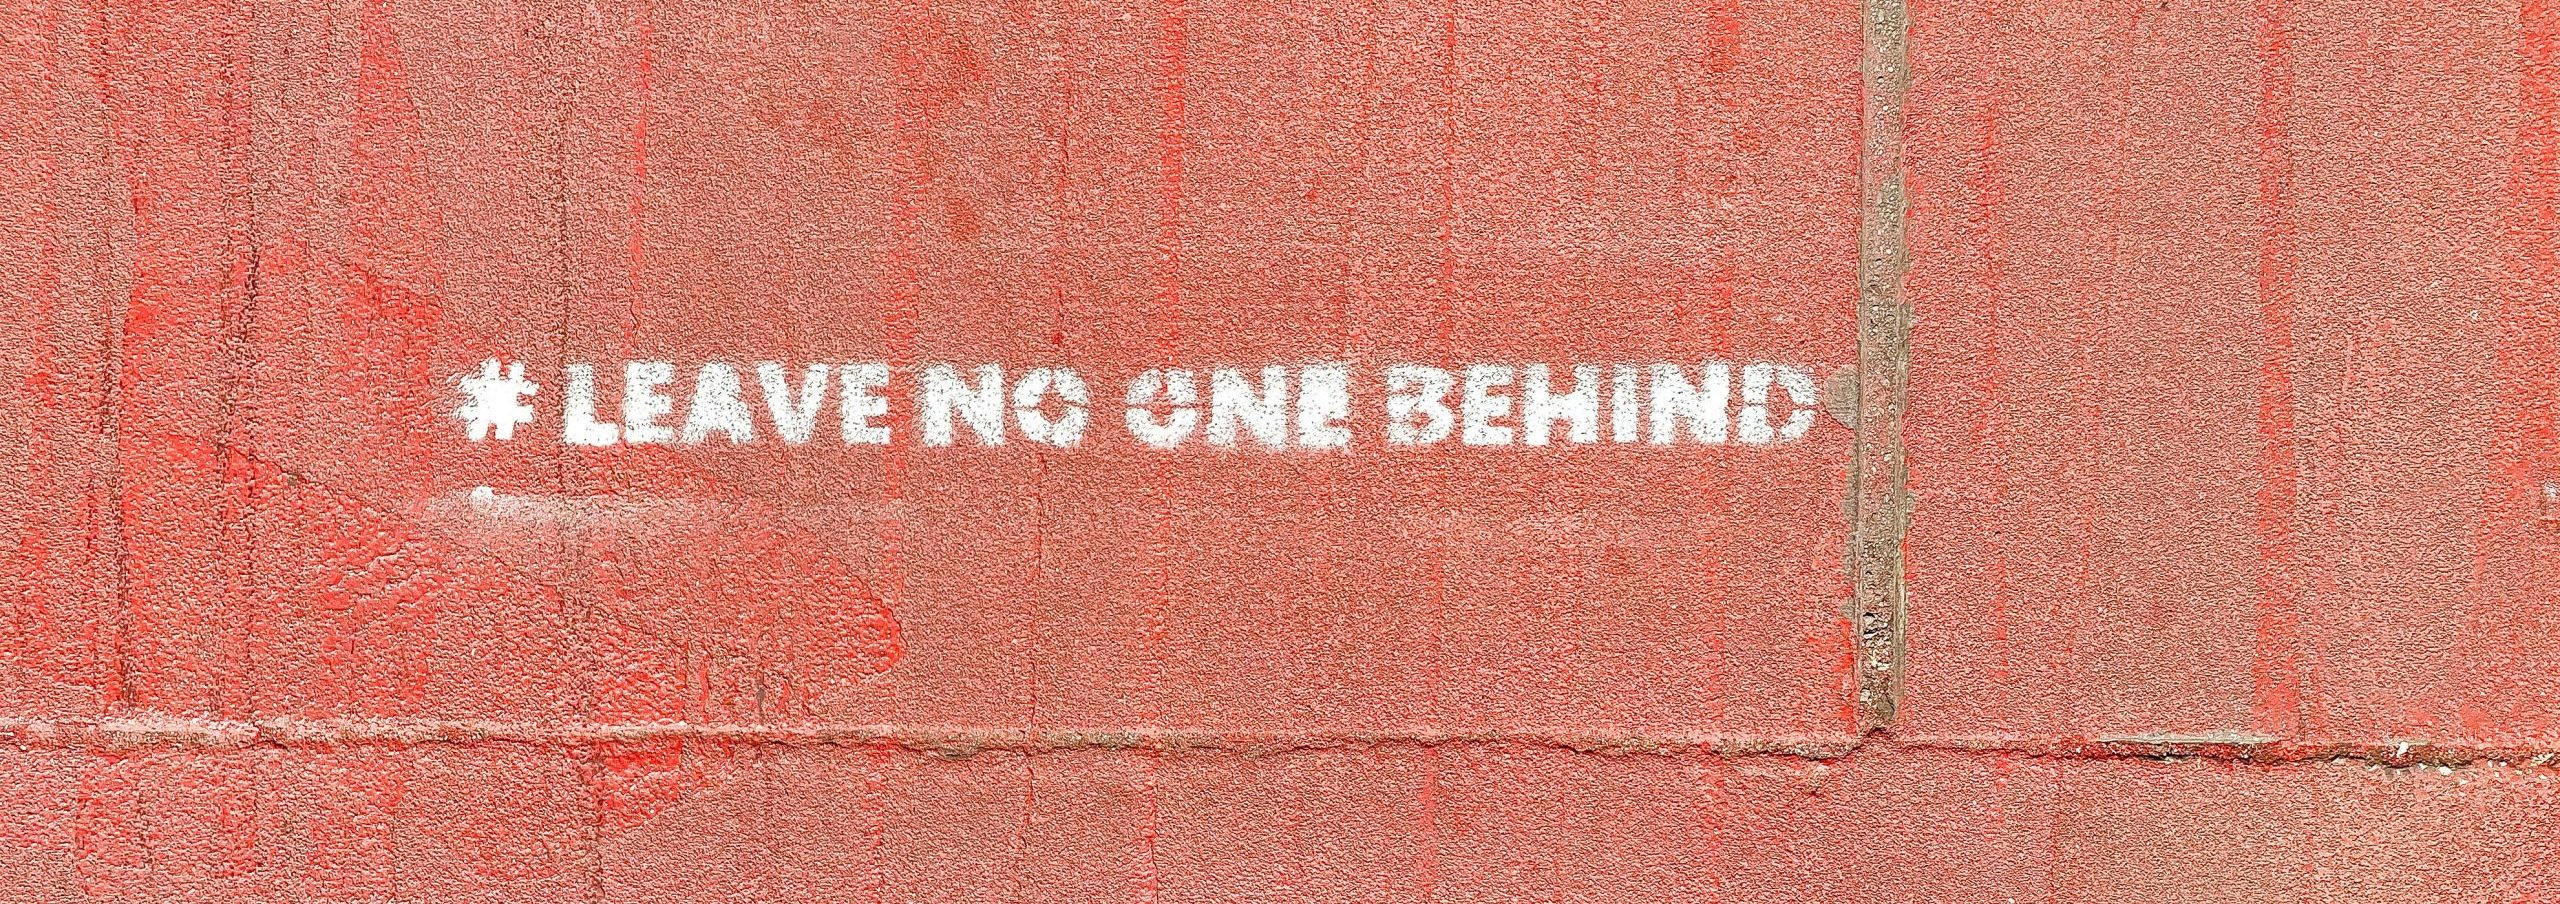 #LeaveNoOneBehind Graffiti by Etienne Girardet